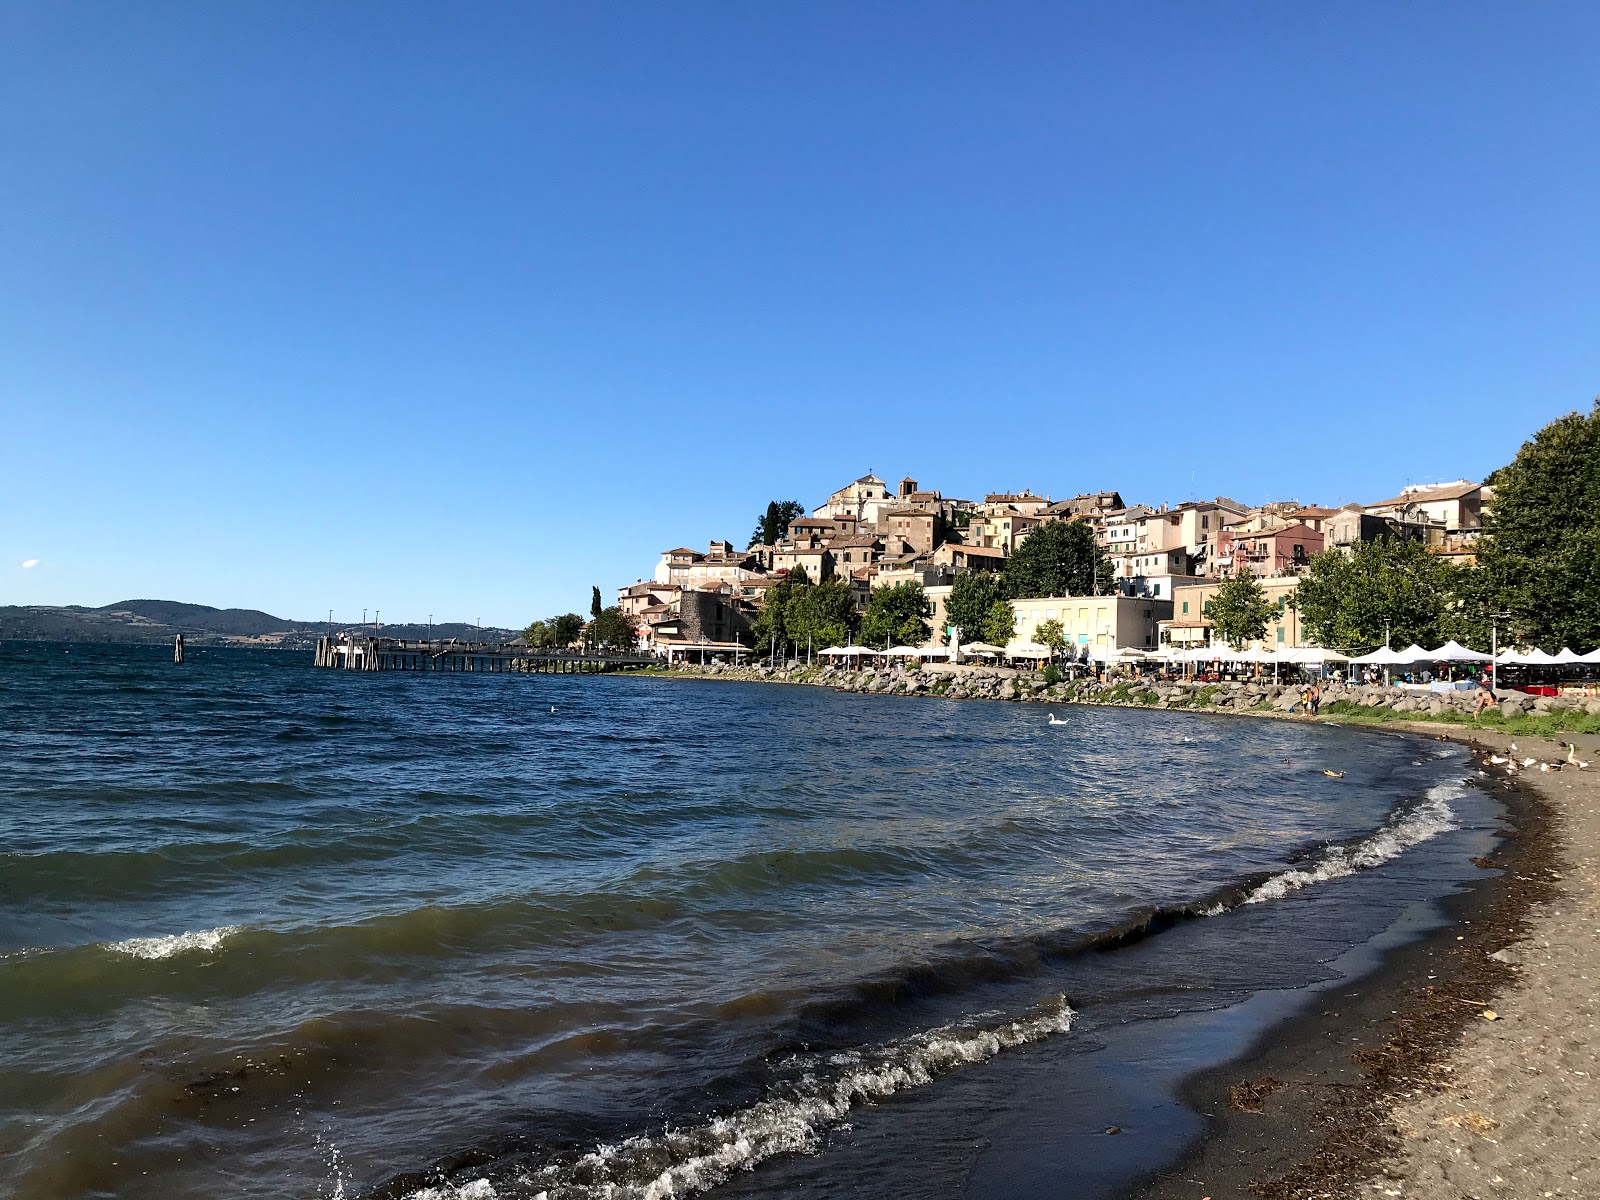 Photo de Spiaggia Libera - endroit populaire parmi les connaisseurs de la détente